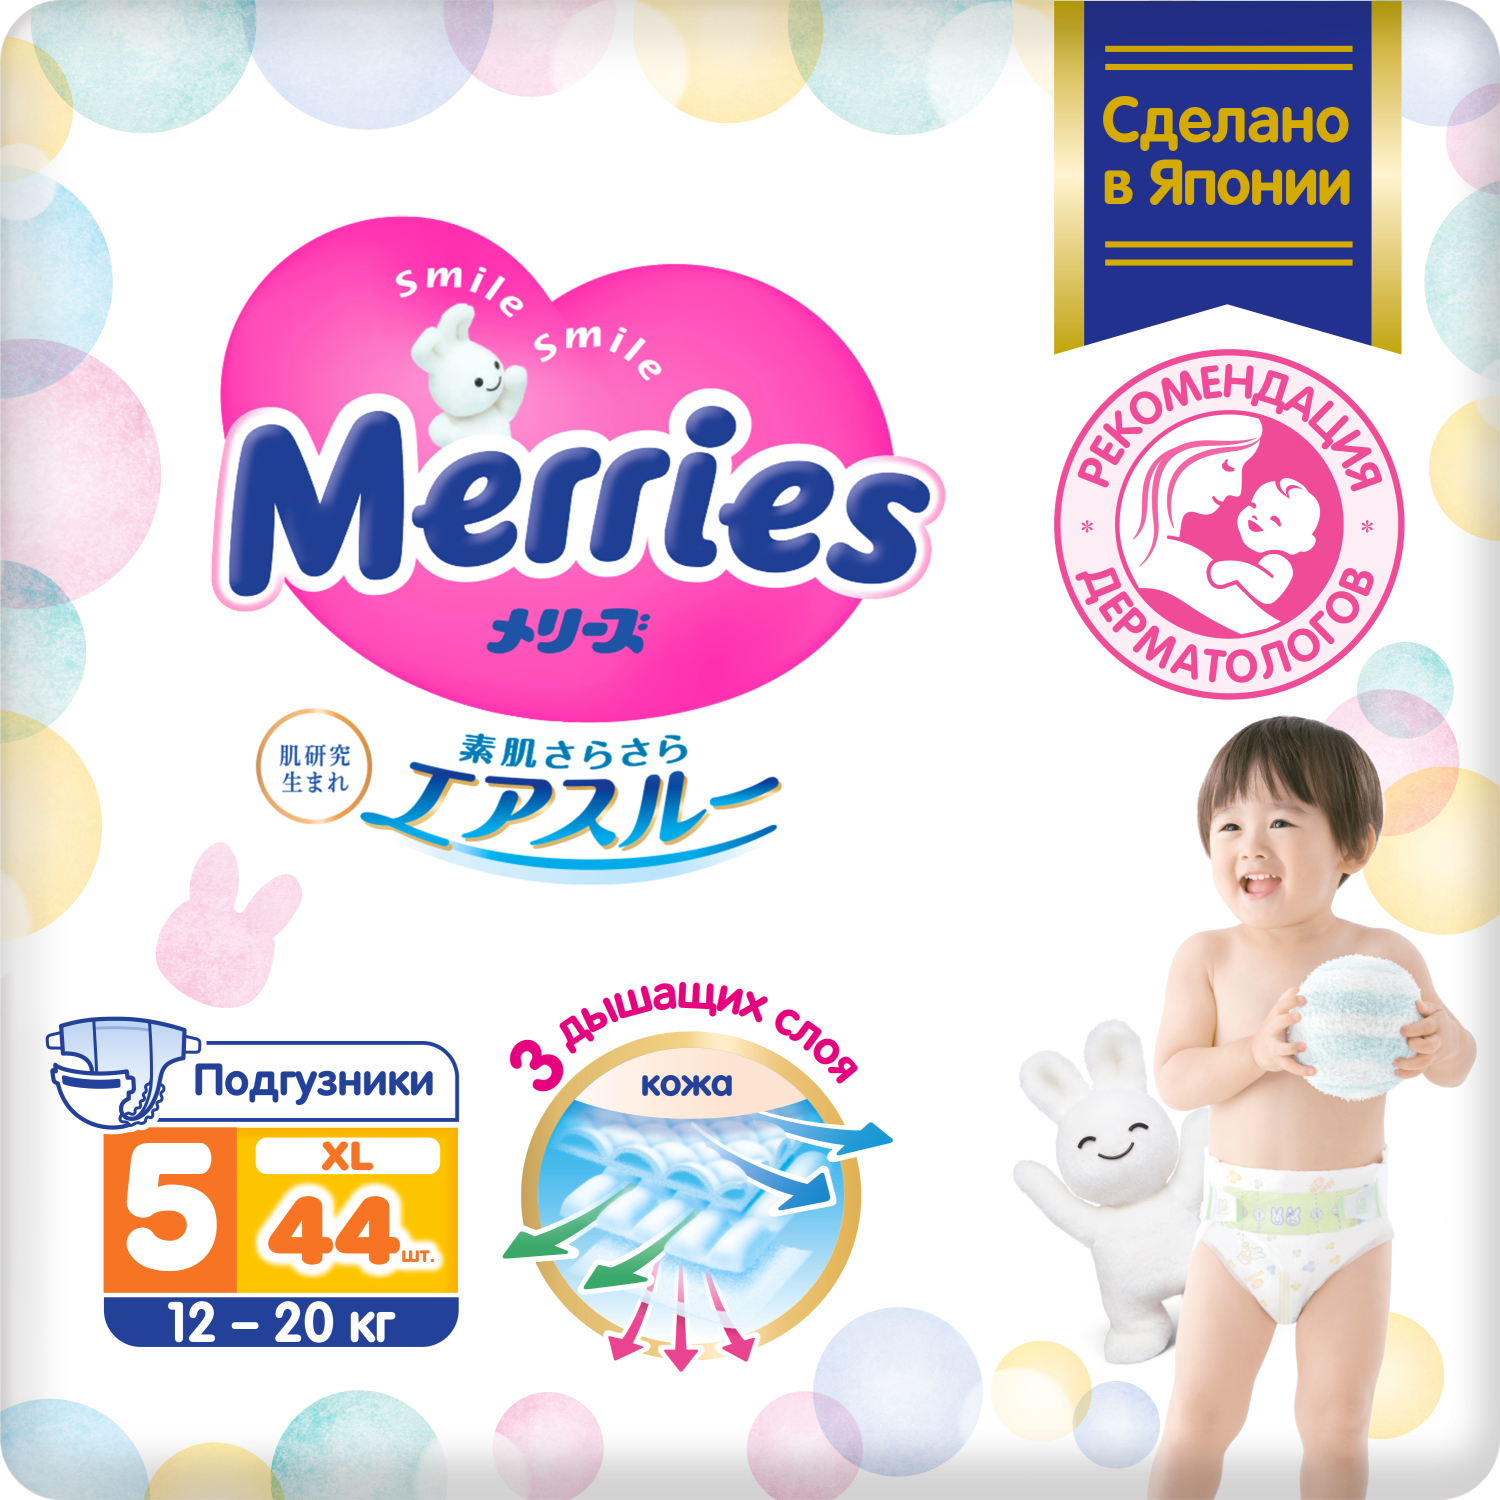 цена Подгузники Merries для детей размер XL 12-20 кг 44 шт